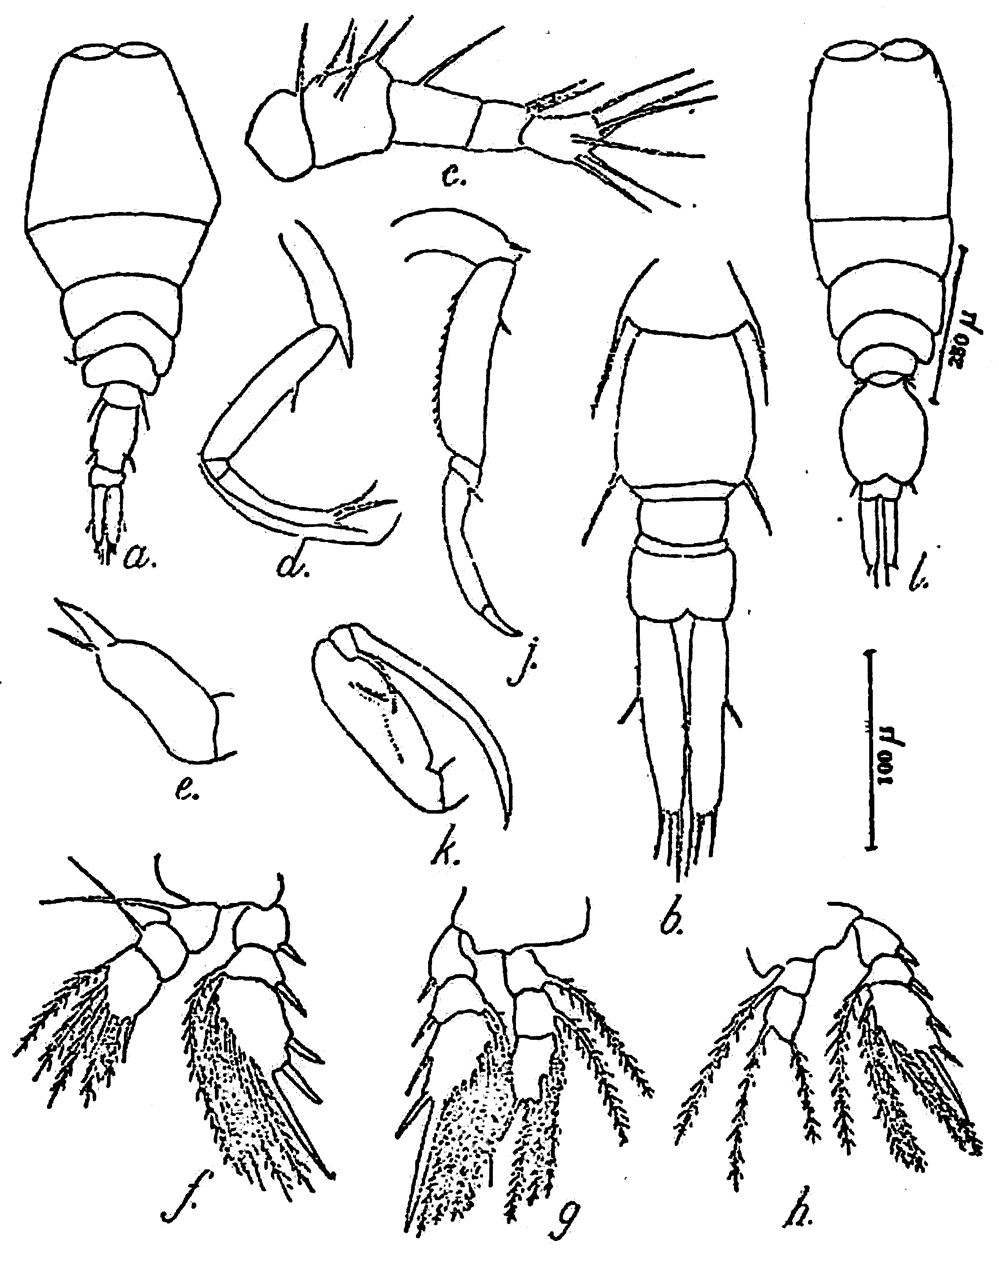 Espèce Vettoria indica - Planche 1 de figures morphologiques